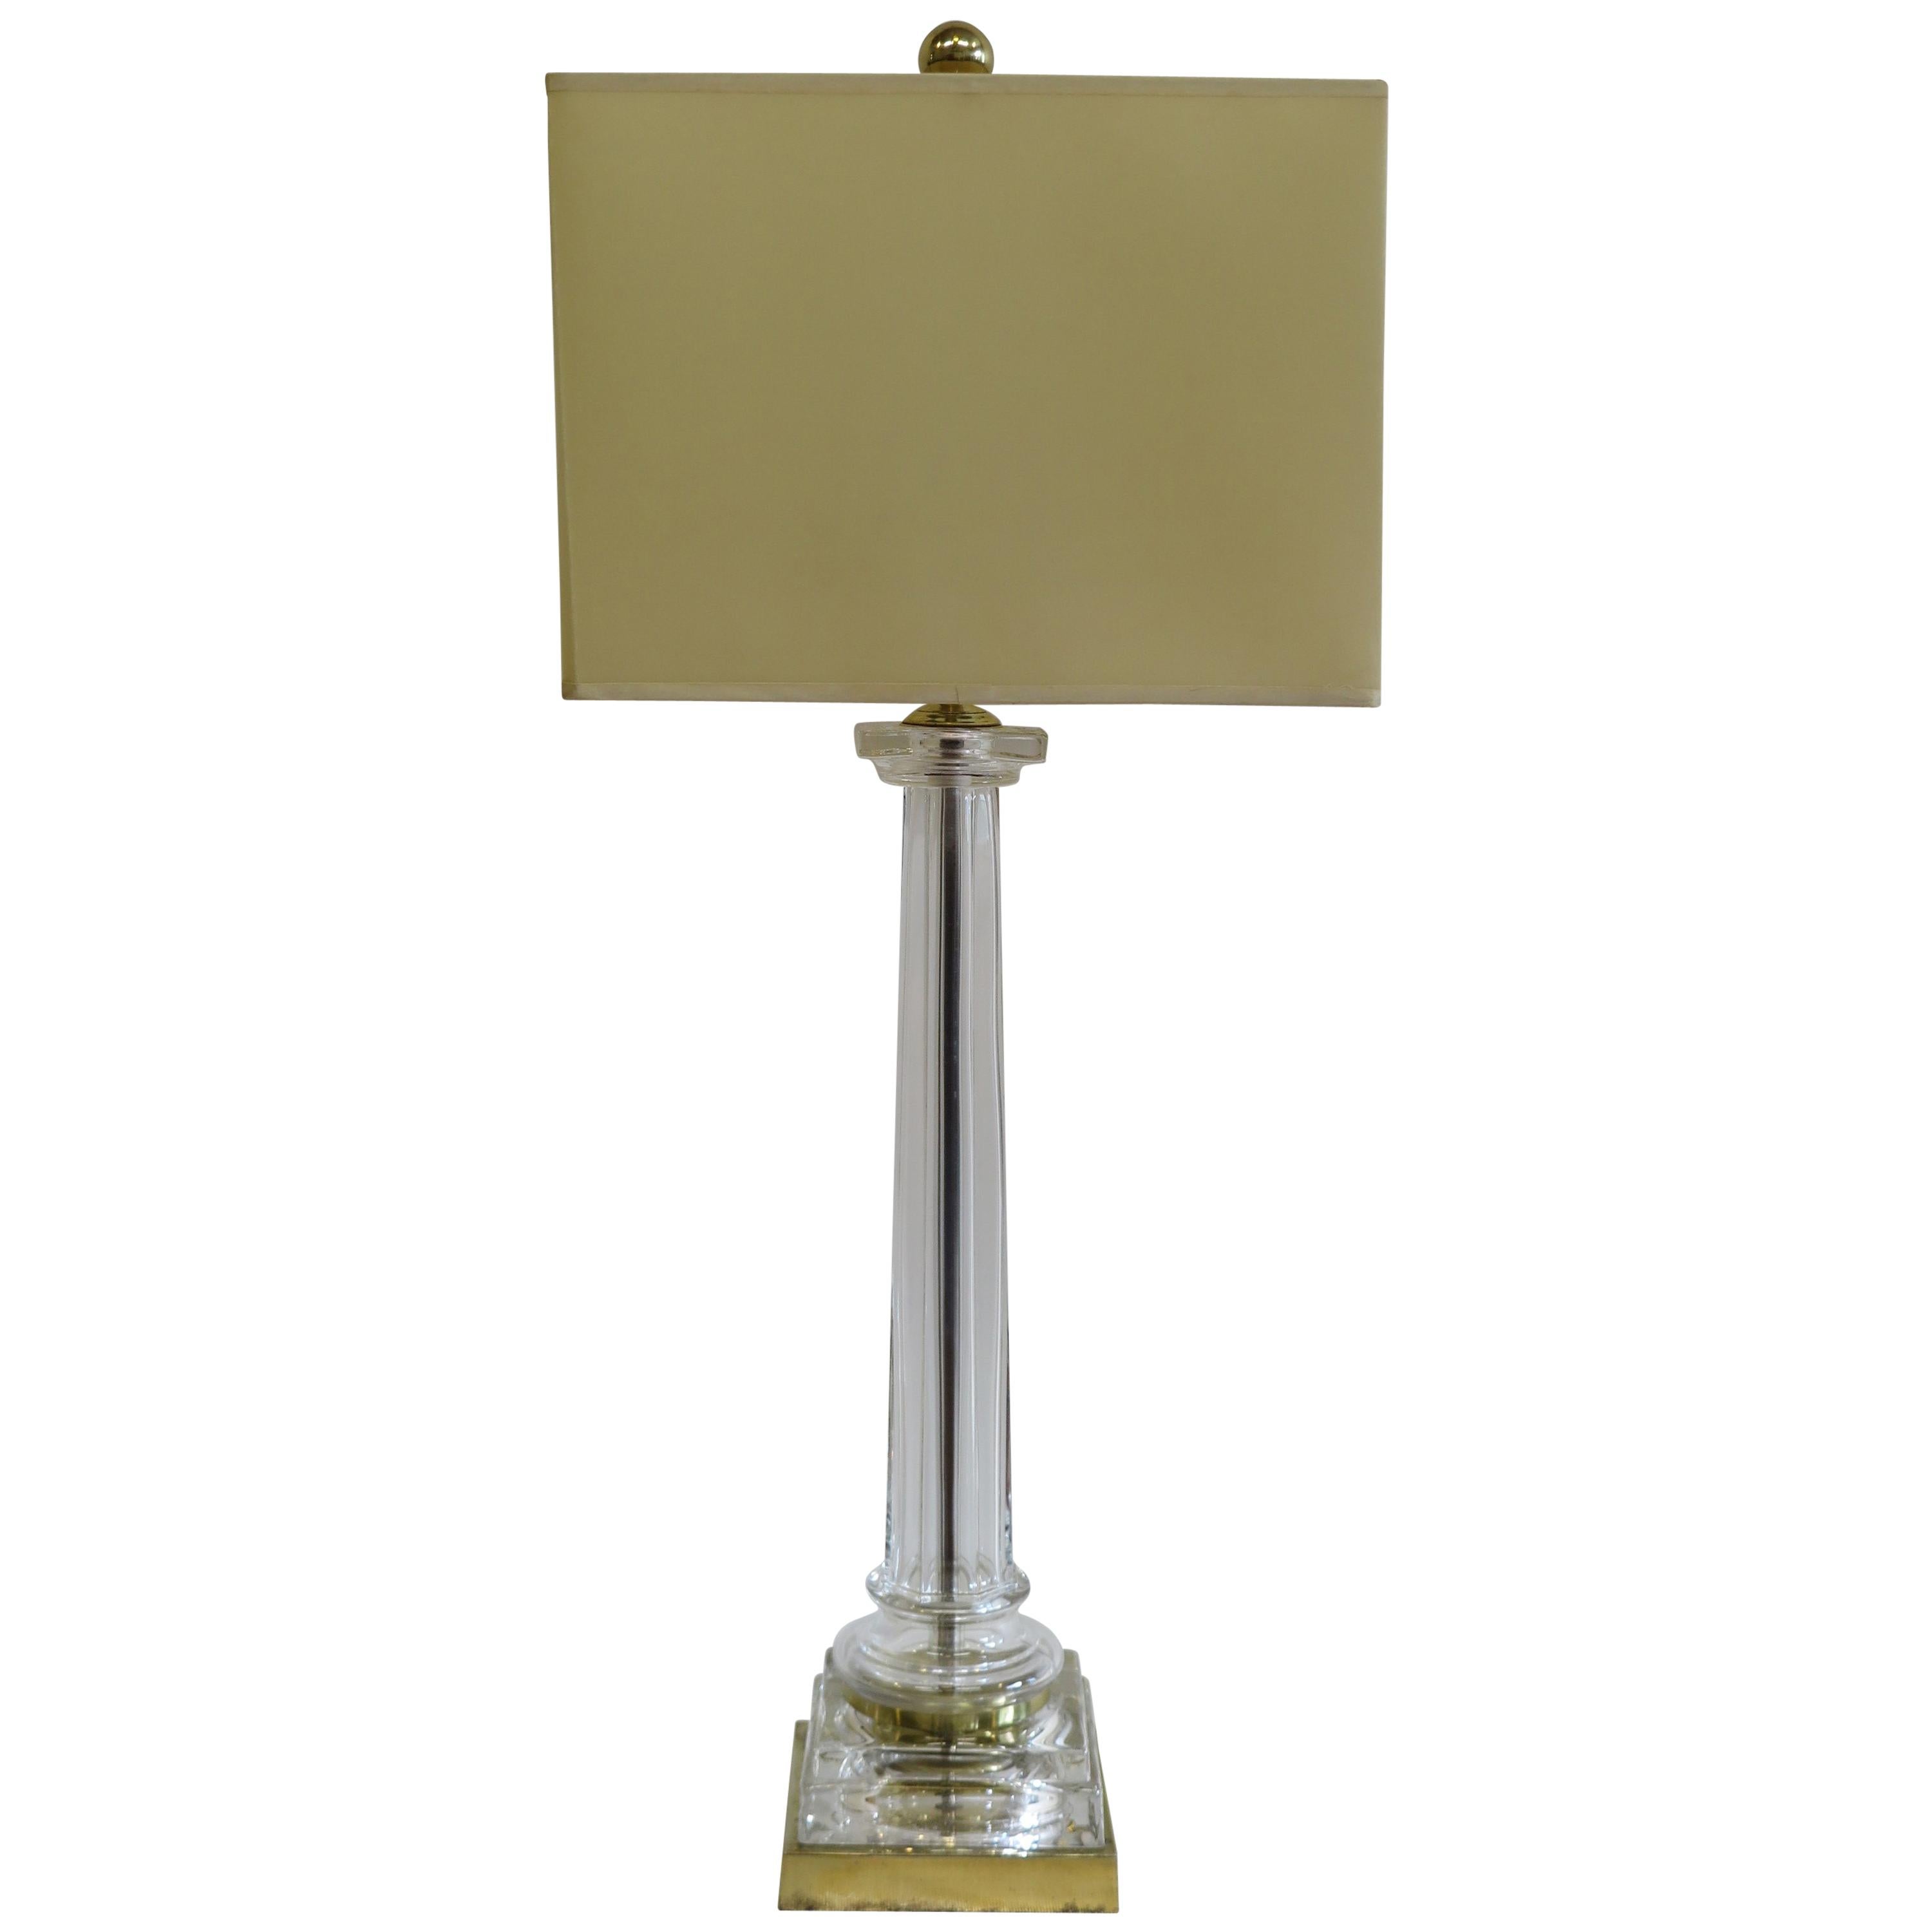 Chapman-Tischlampe im neoklassizistischen Stil